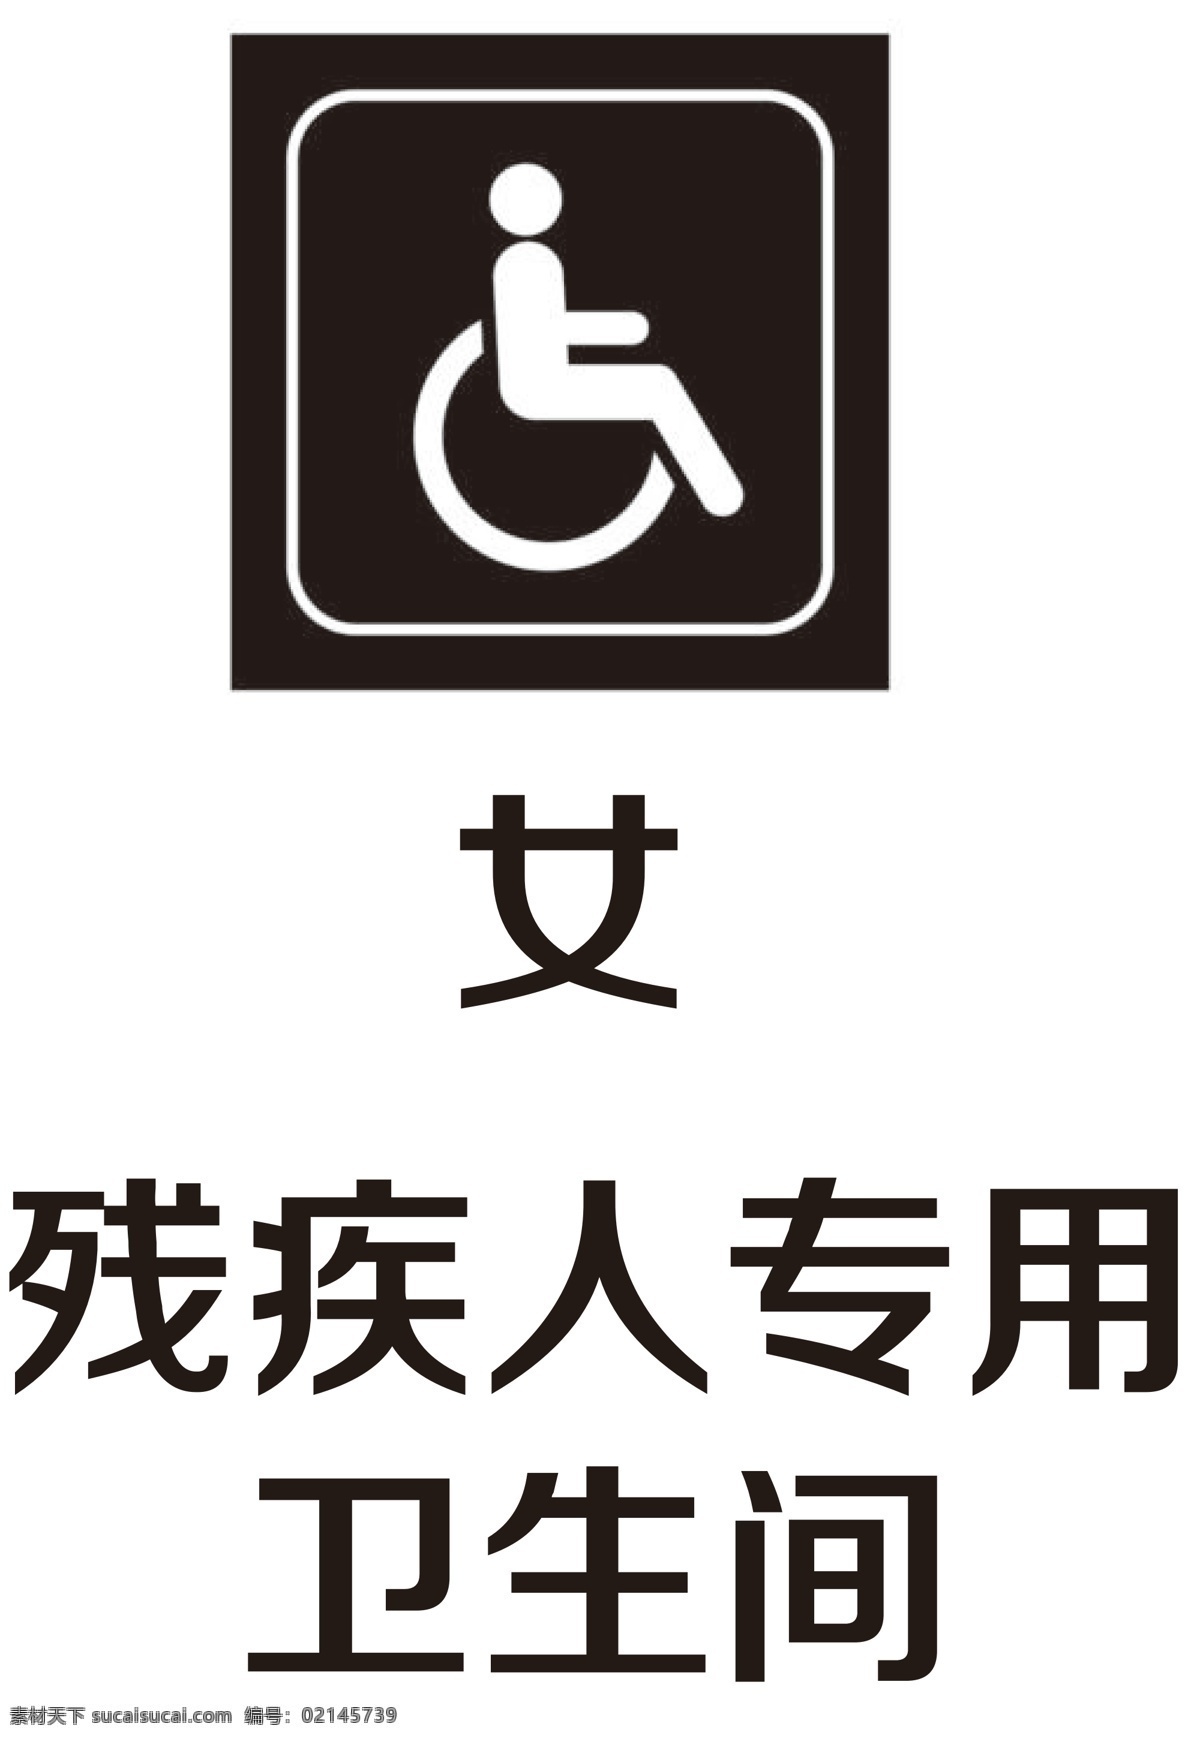 残疾人 卫生间 标志 残疾专用 图标 公共标识 标志图标 公共标识标志